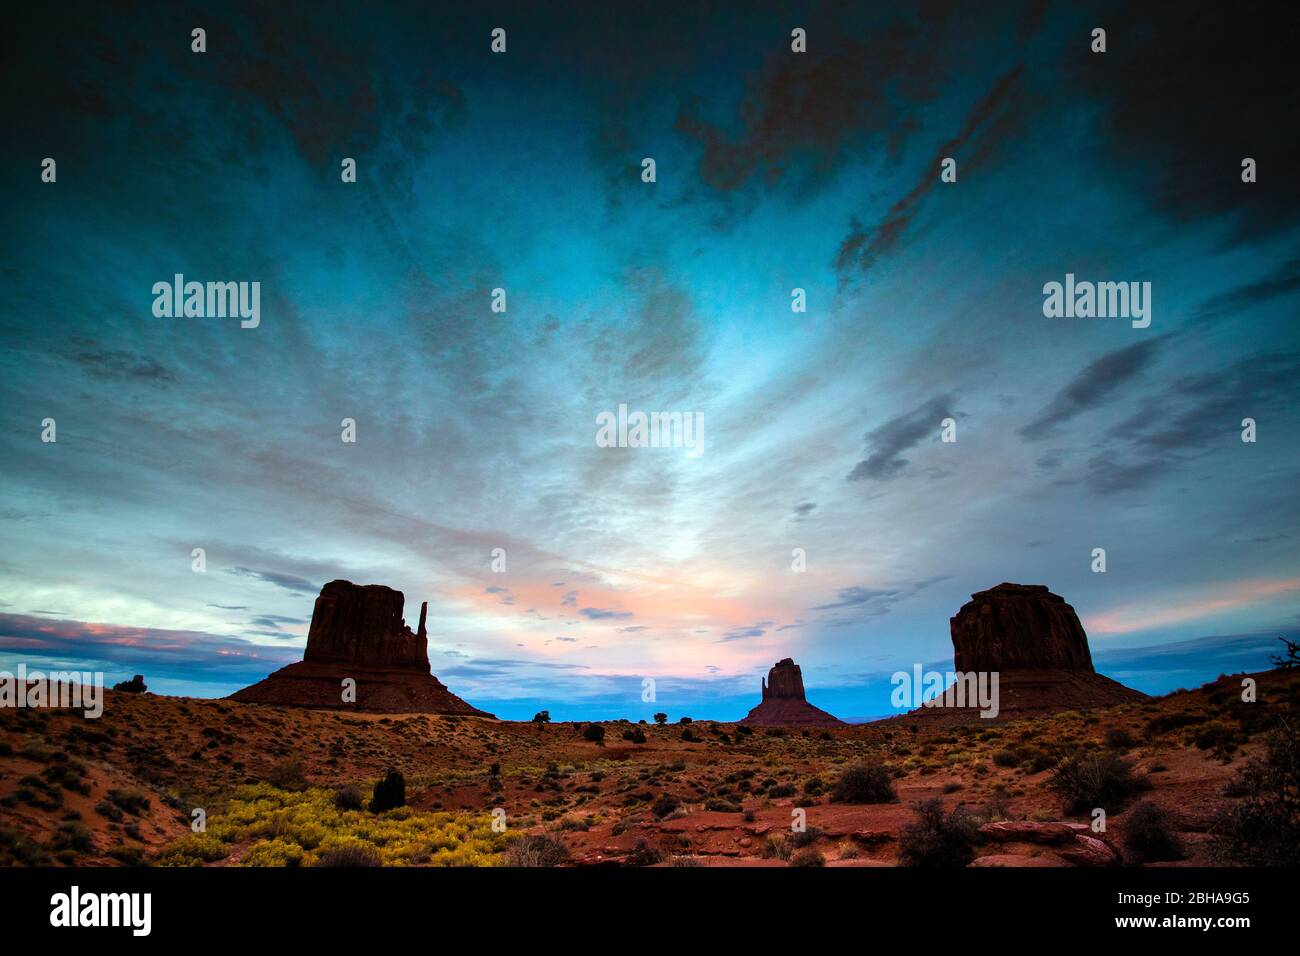 Le formazioni rocciose di Mittens butte nel deserto, Monument Valley, Utah, USA Foto Stock